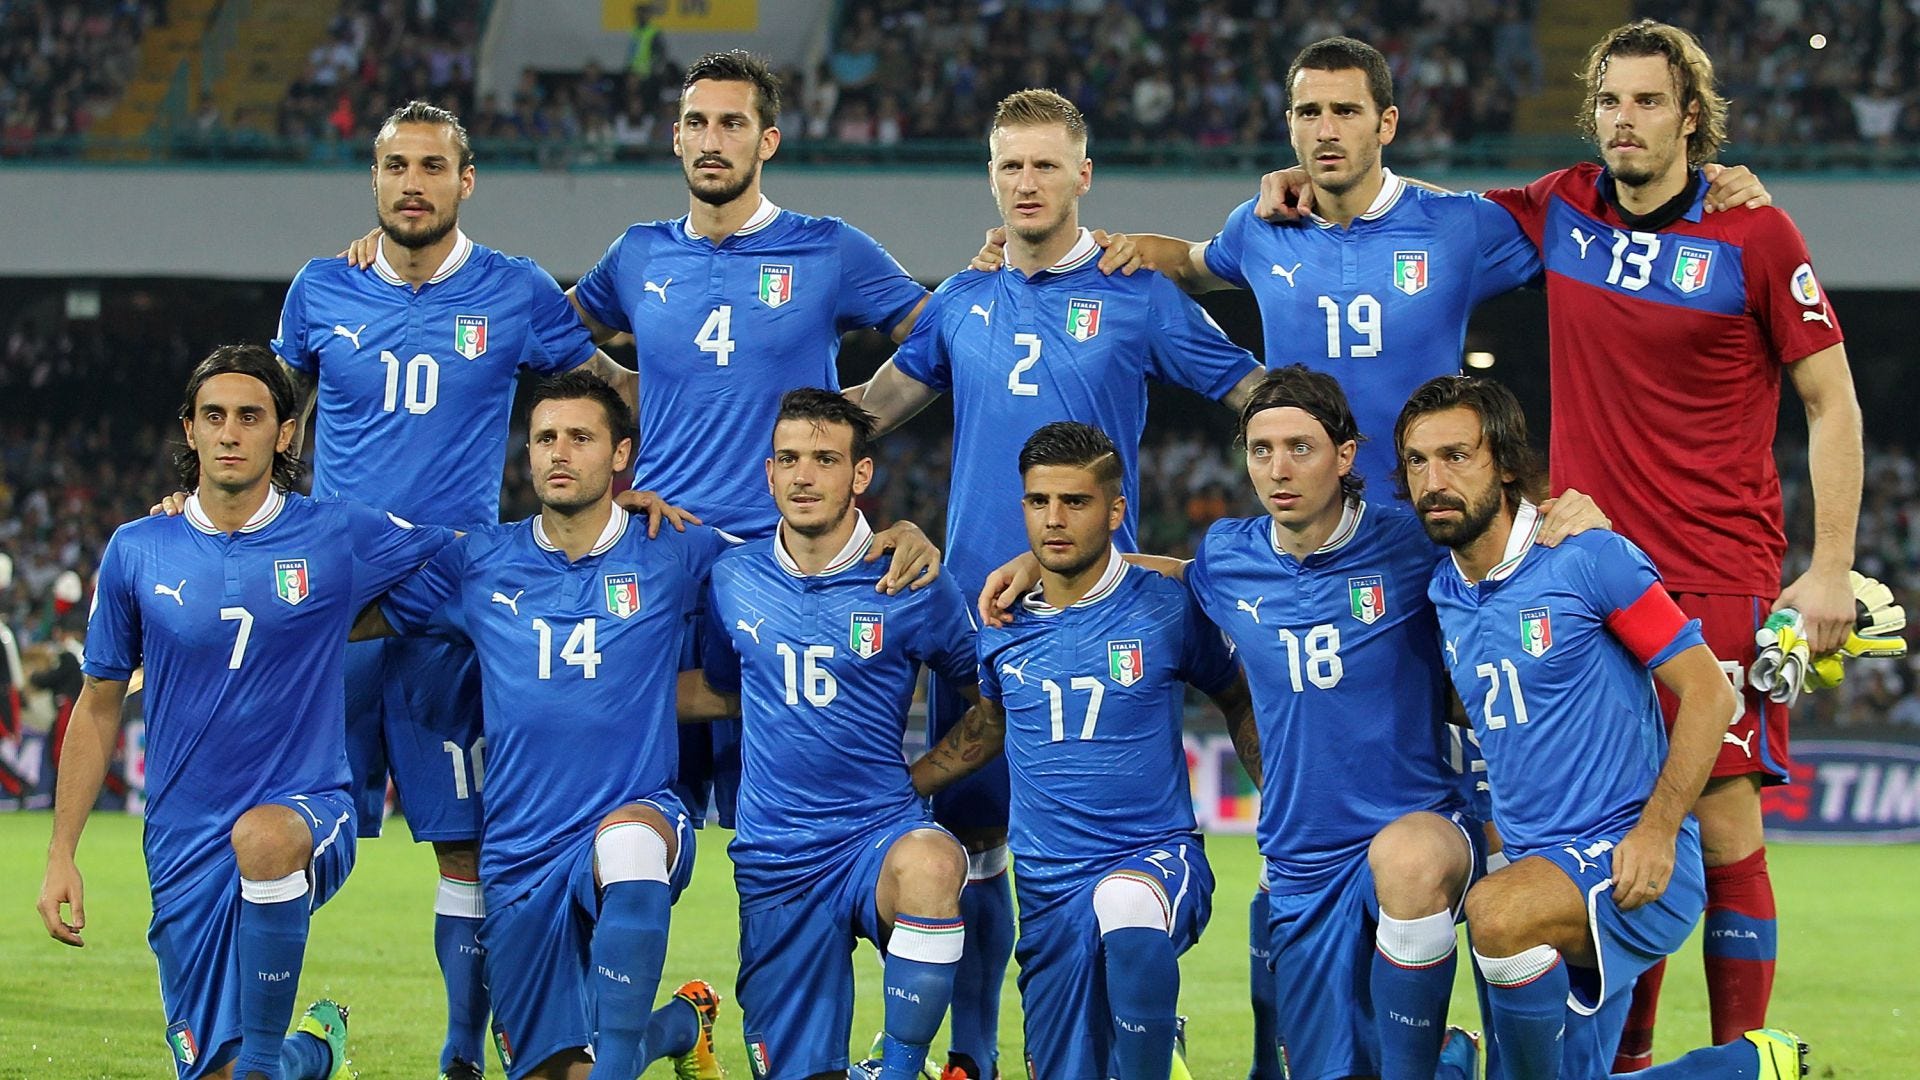 Фото сборной италии по футболу фото